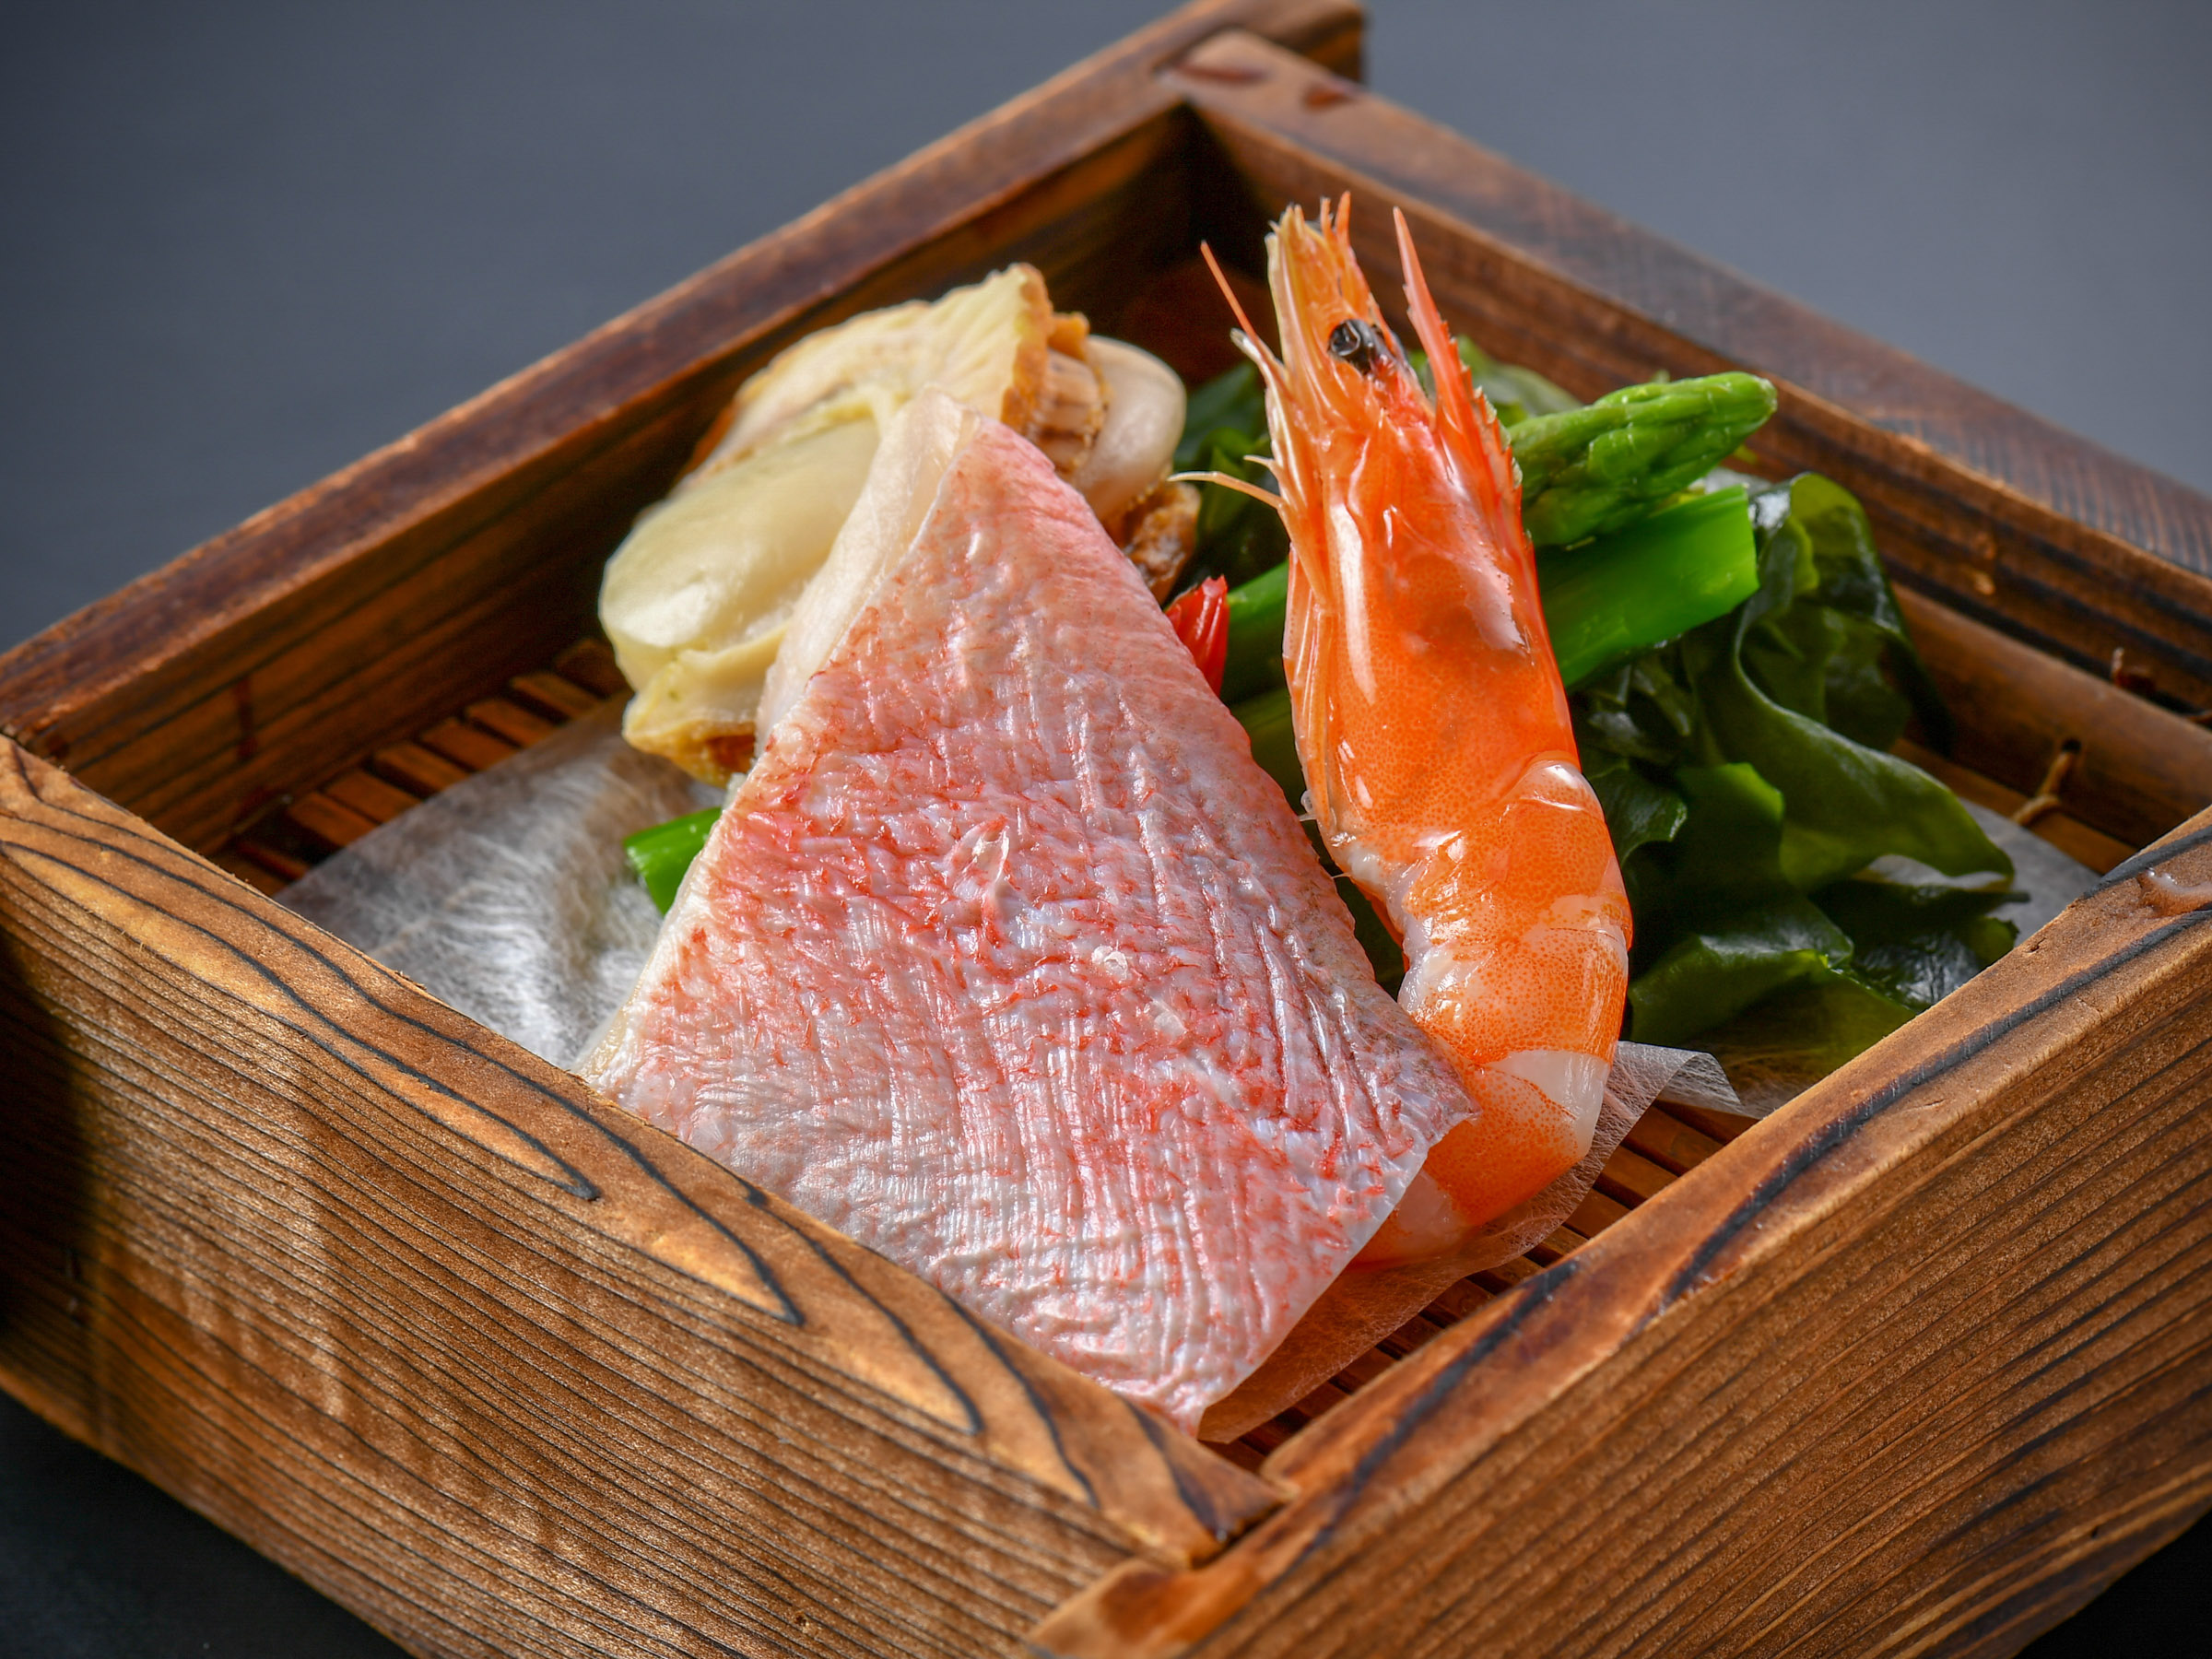 【海鮮せいろ蒸し】厳選された新鮮な魚介や旬の野菜を特製のせいろで蒸してご堪能ください♪